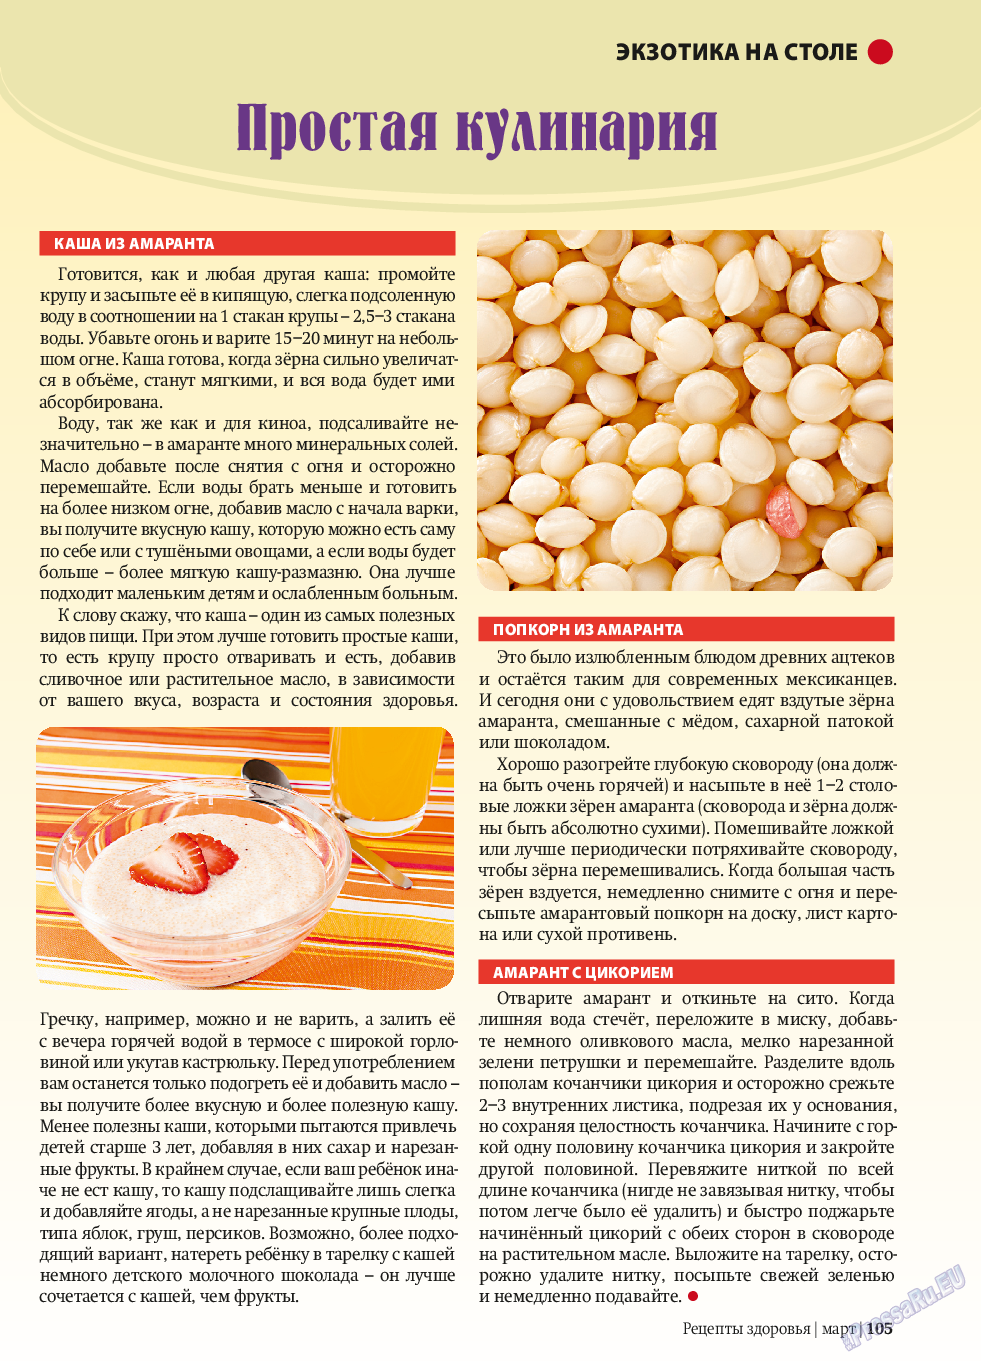 Рецепты здоровья, журнал. 2014 №58 стр.105